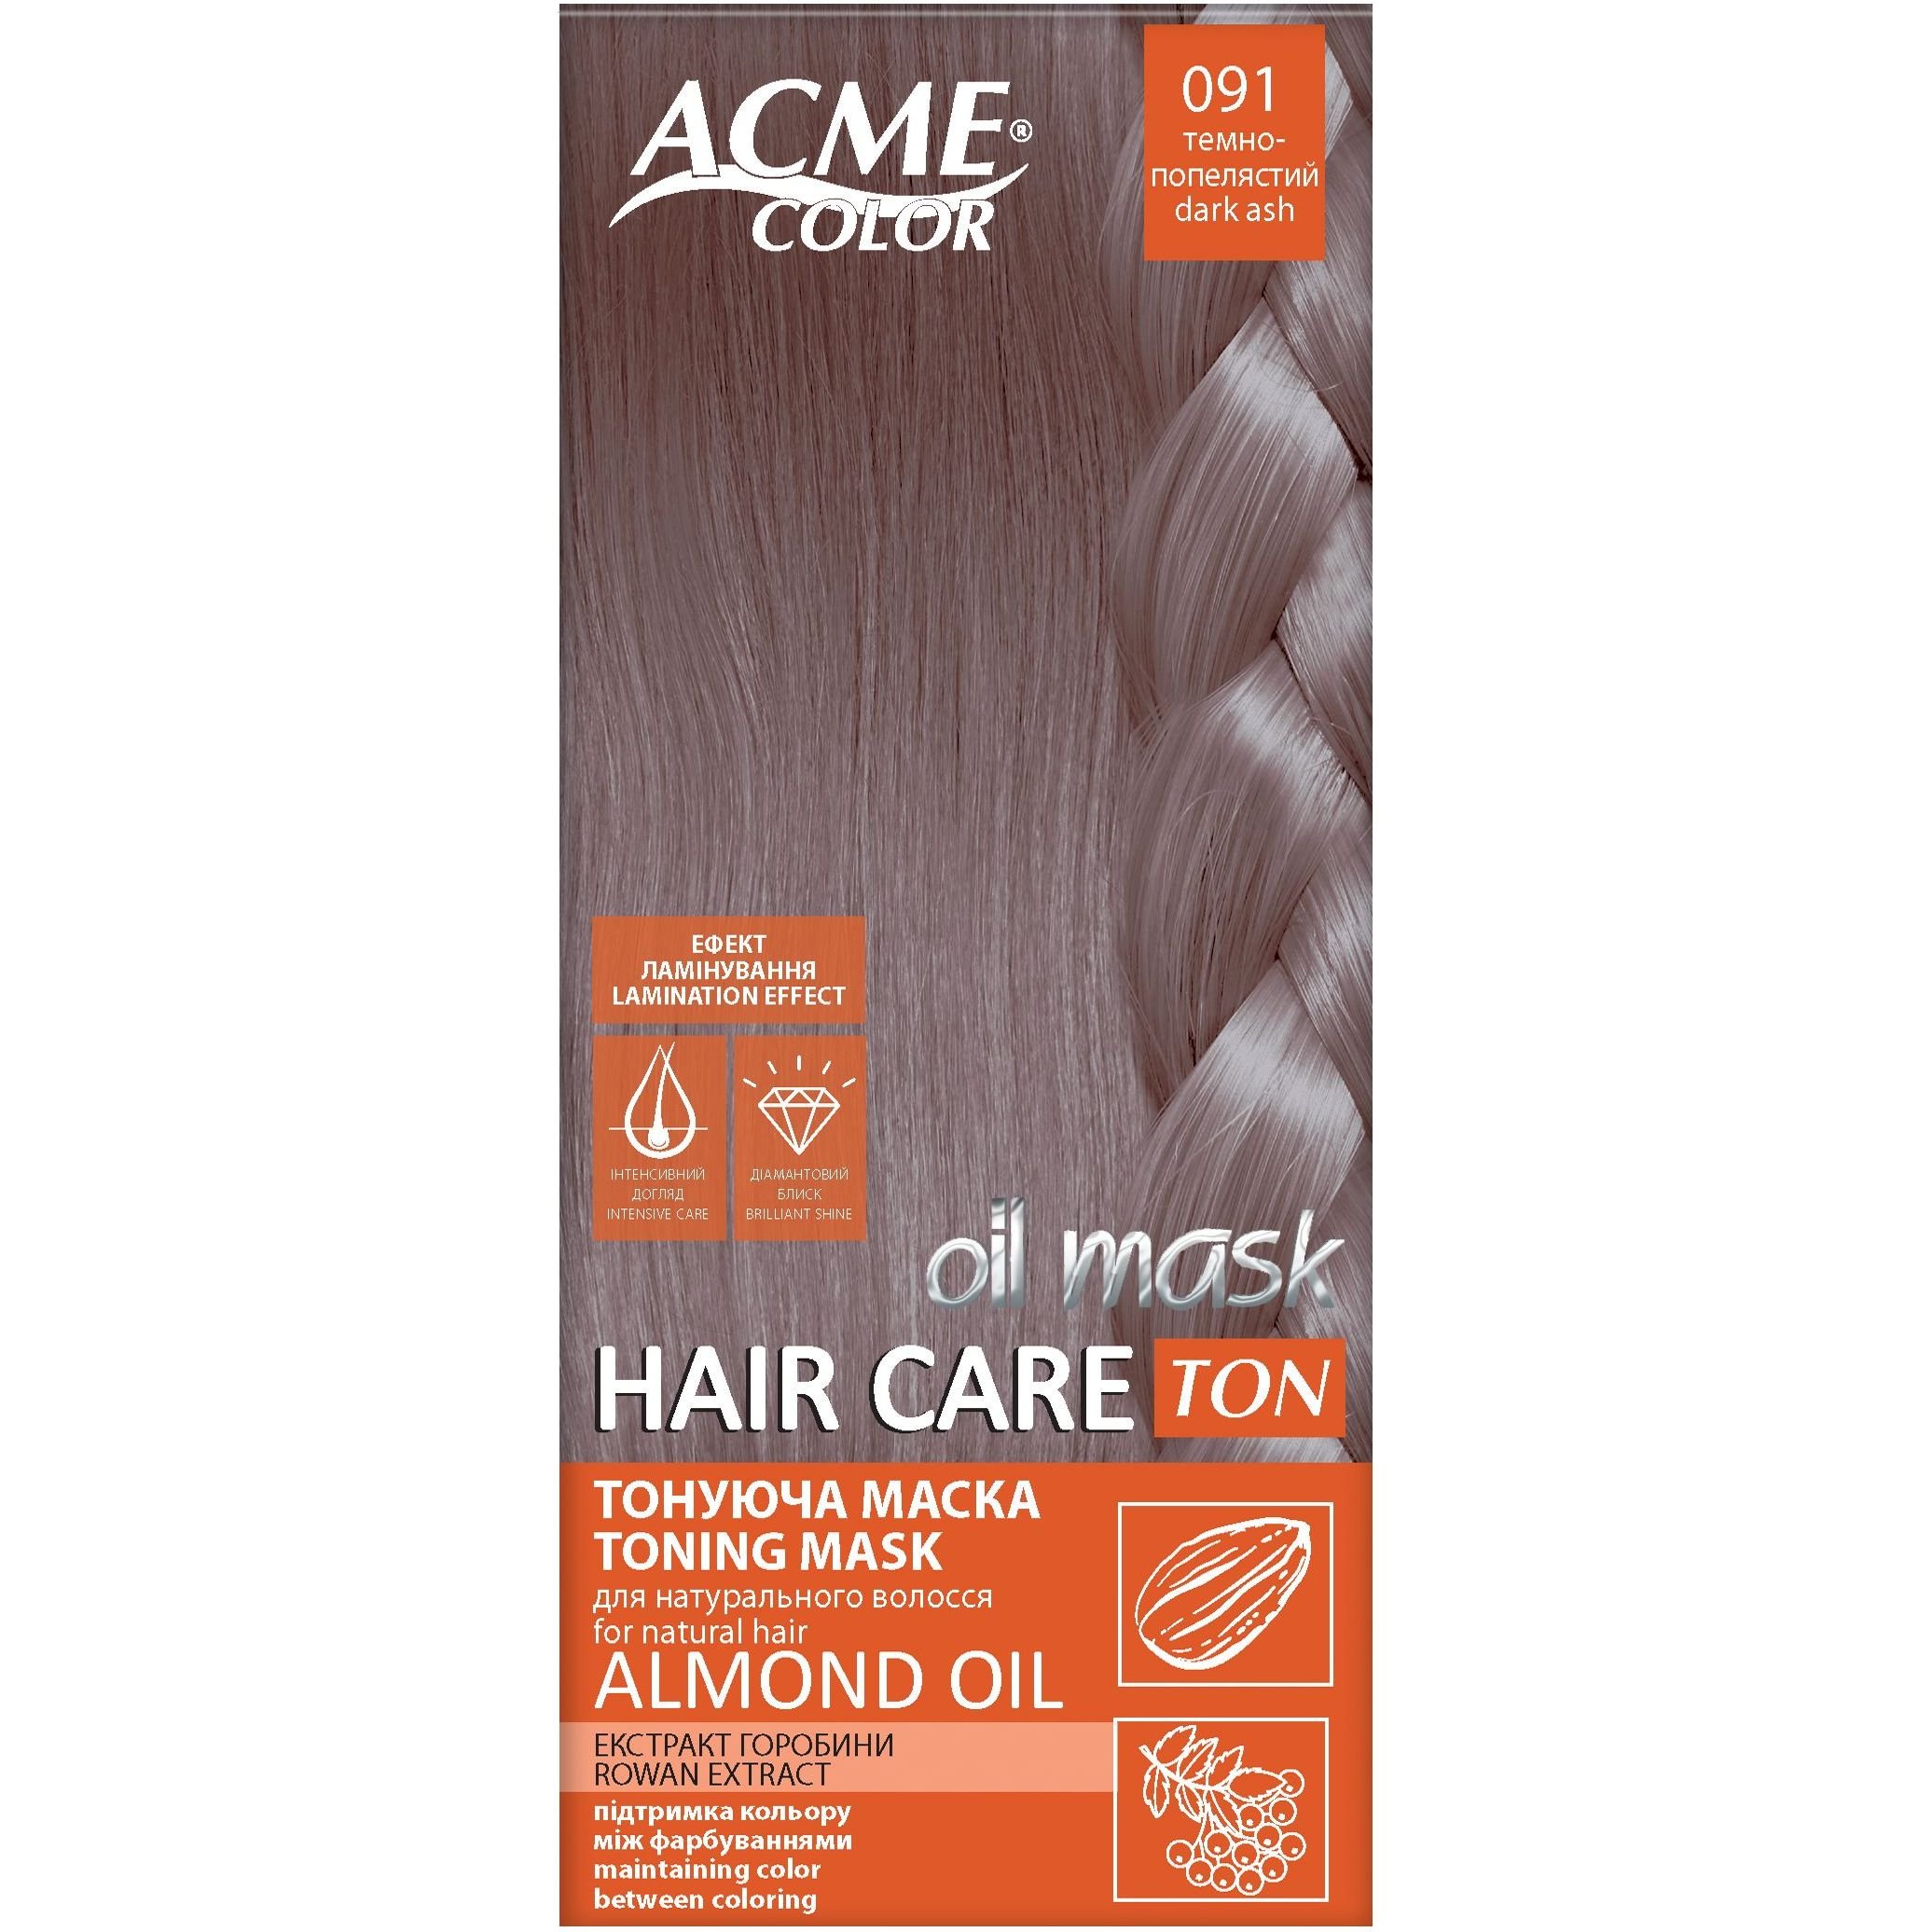 Тонирующая маска для волос Acme Color Hair Care Ton oil mask, тон 091, темно-пепельный, 30 мл - фото 1